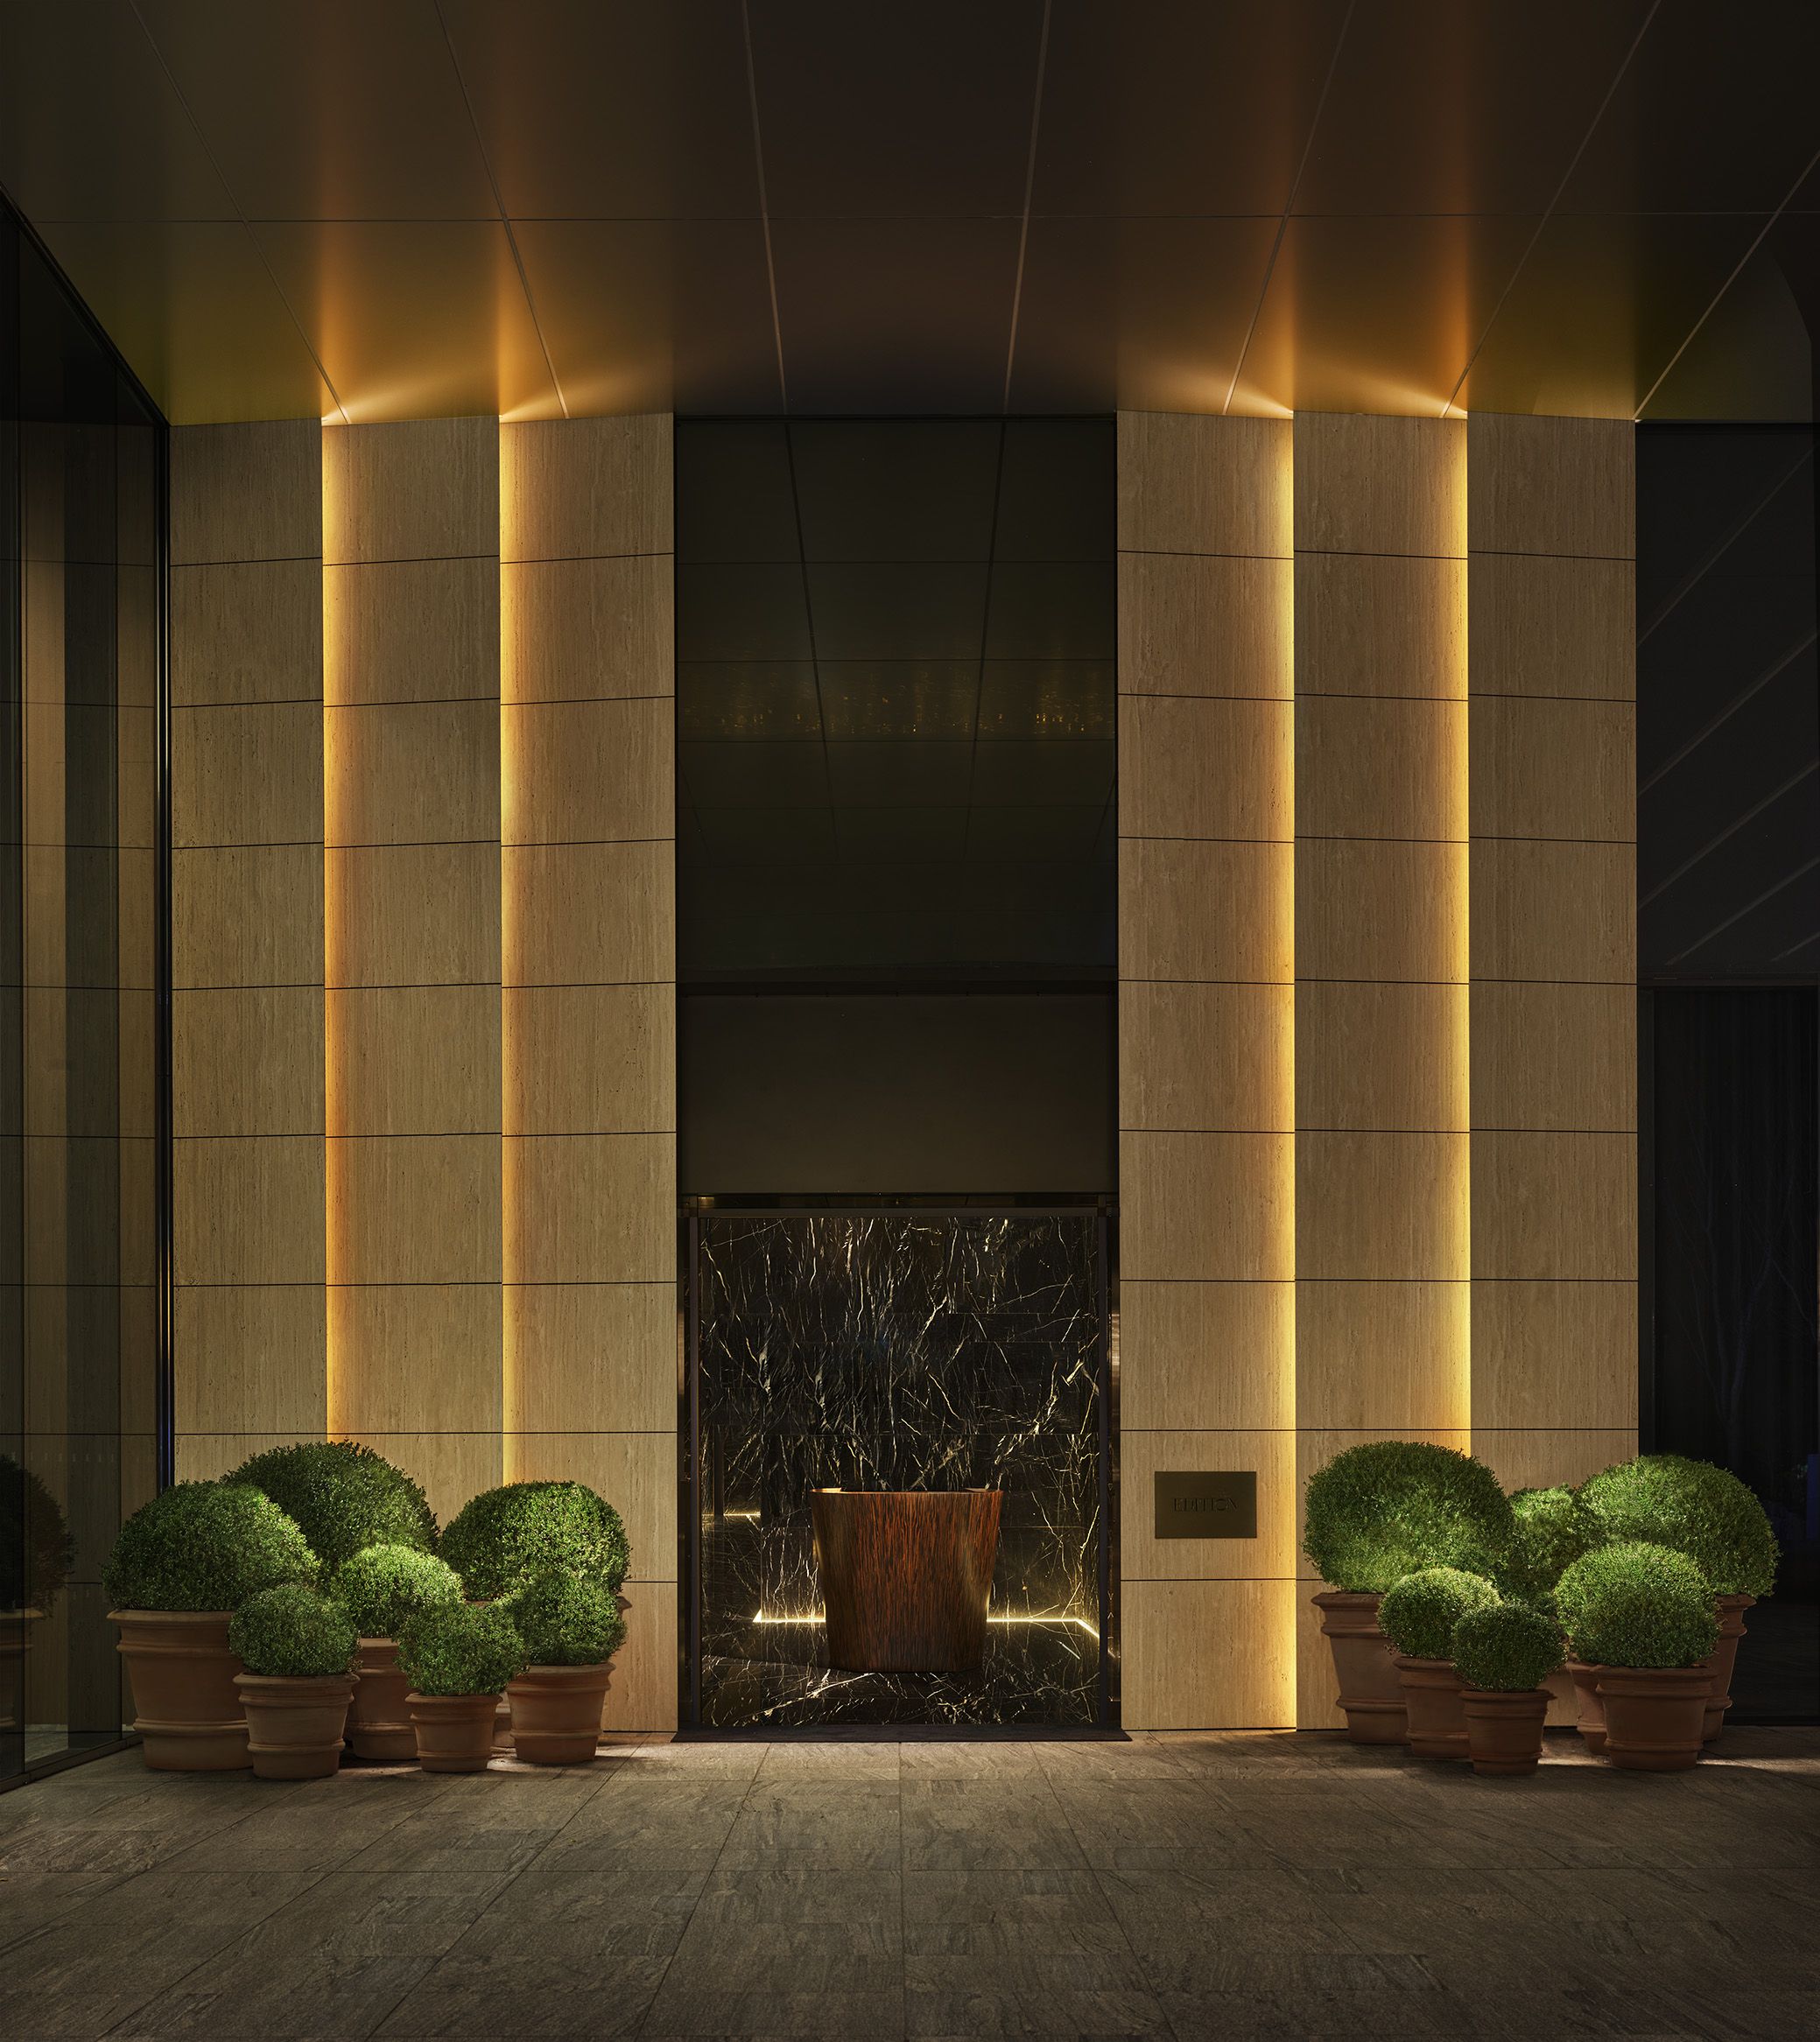 泊まりに行きたい 新オープンの東京近郊スタイリッシュホテル11軒